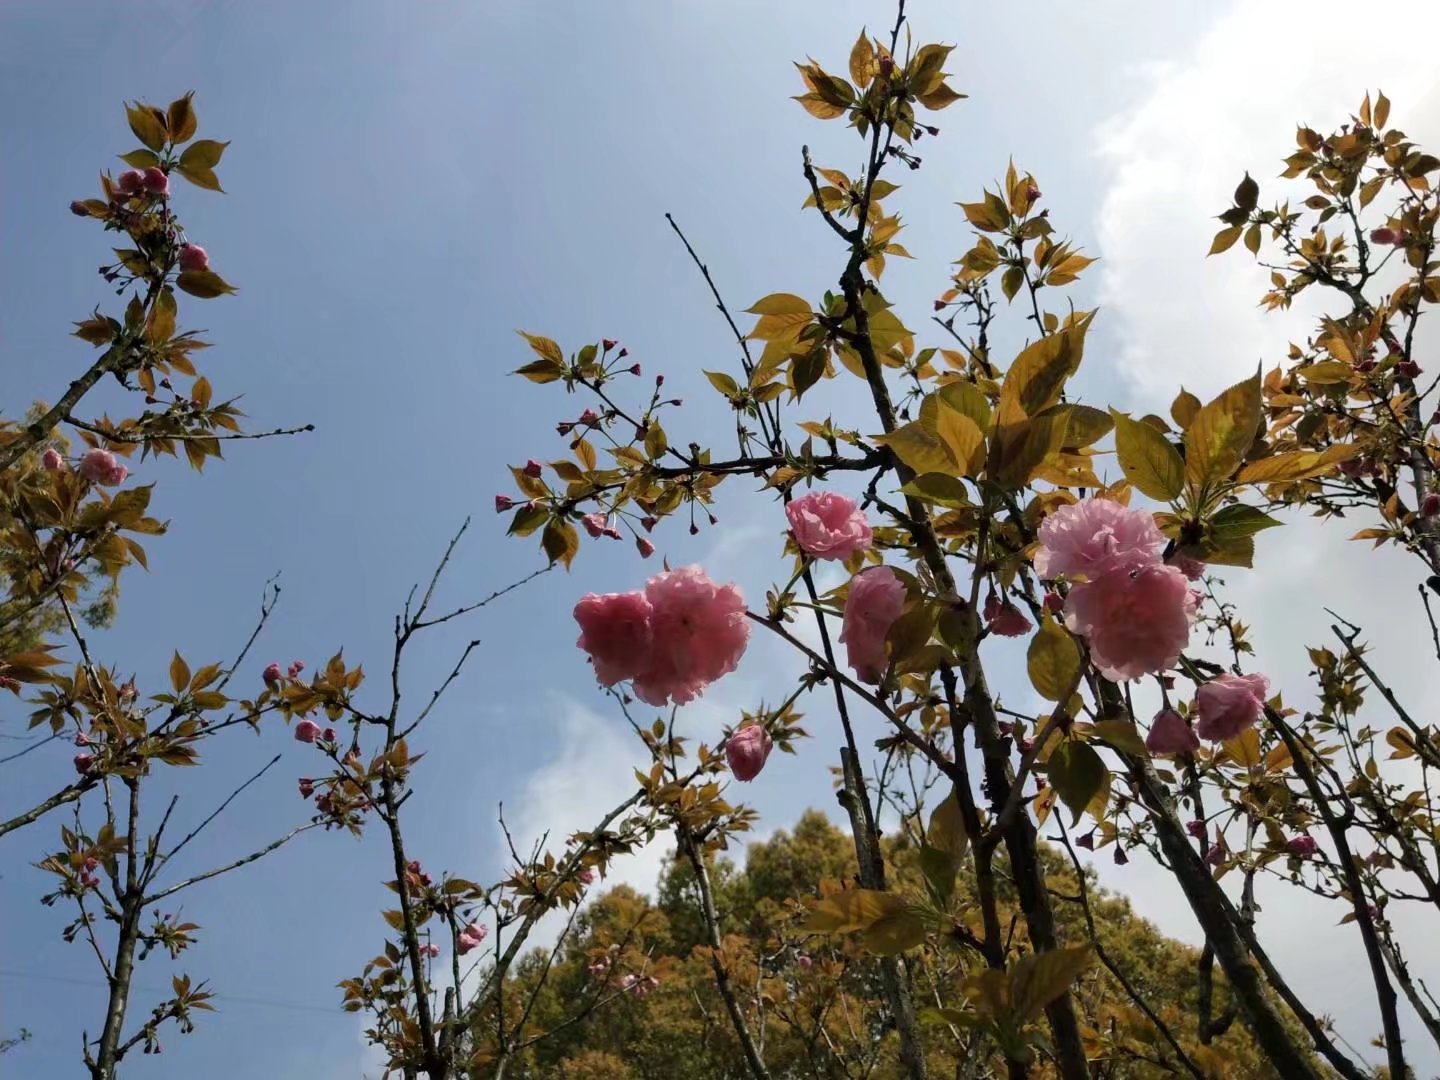 的四五月份是石峰公园的樱花节,大片的樱花盛开,是株洲市的一大盛事